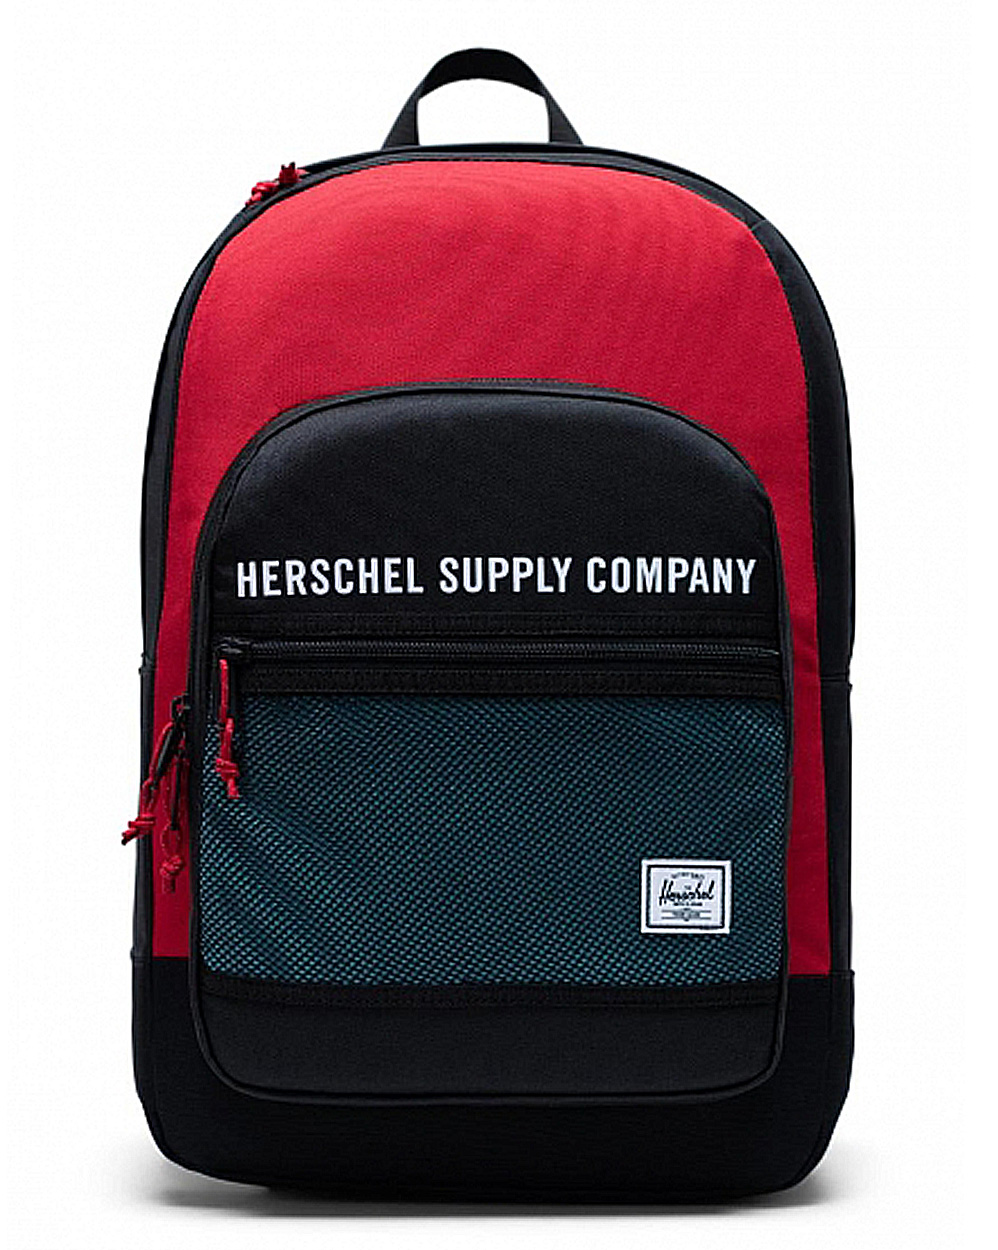 Рюкзак водоотталкивающий с отделом для 15 ноутбука Herschel Kaine Black Red отзывы